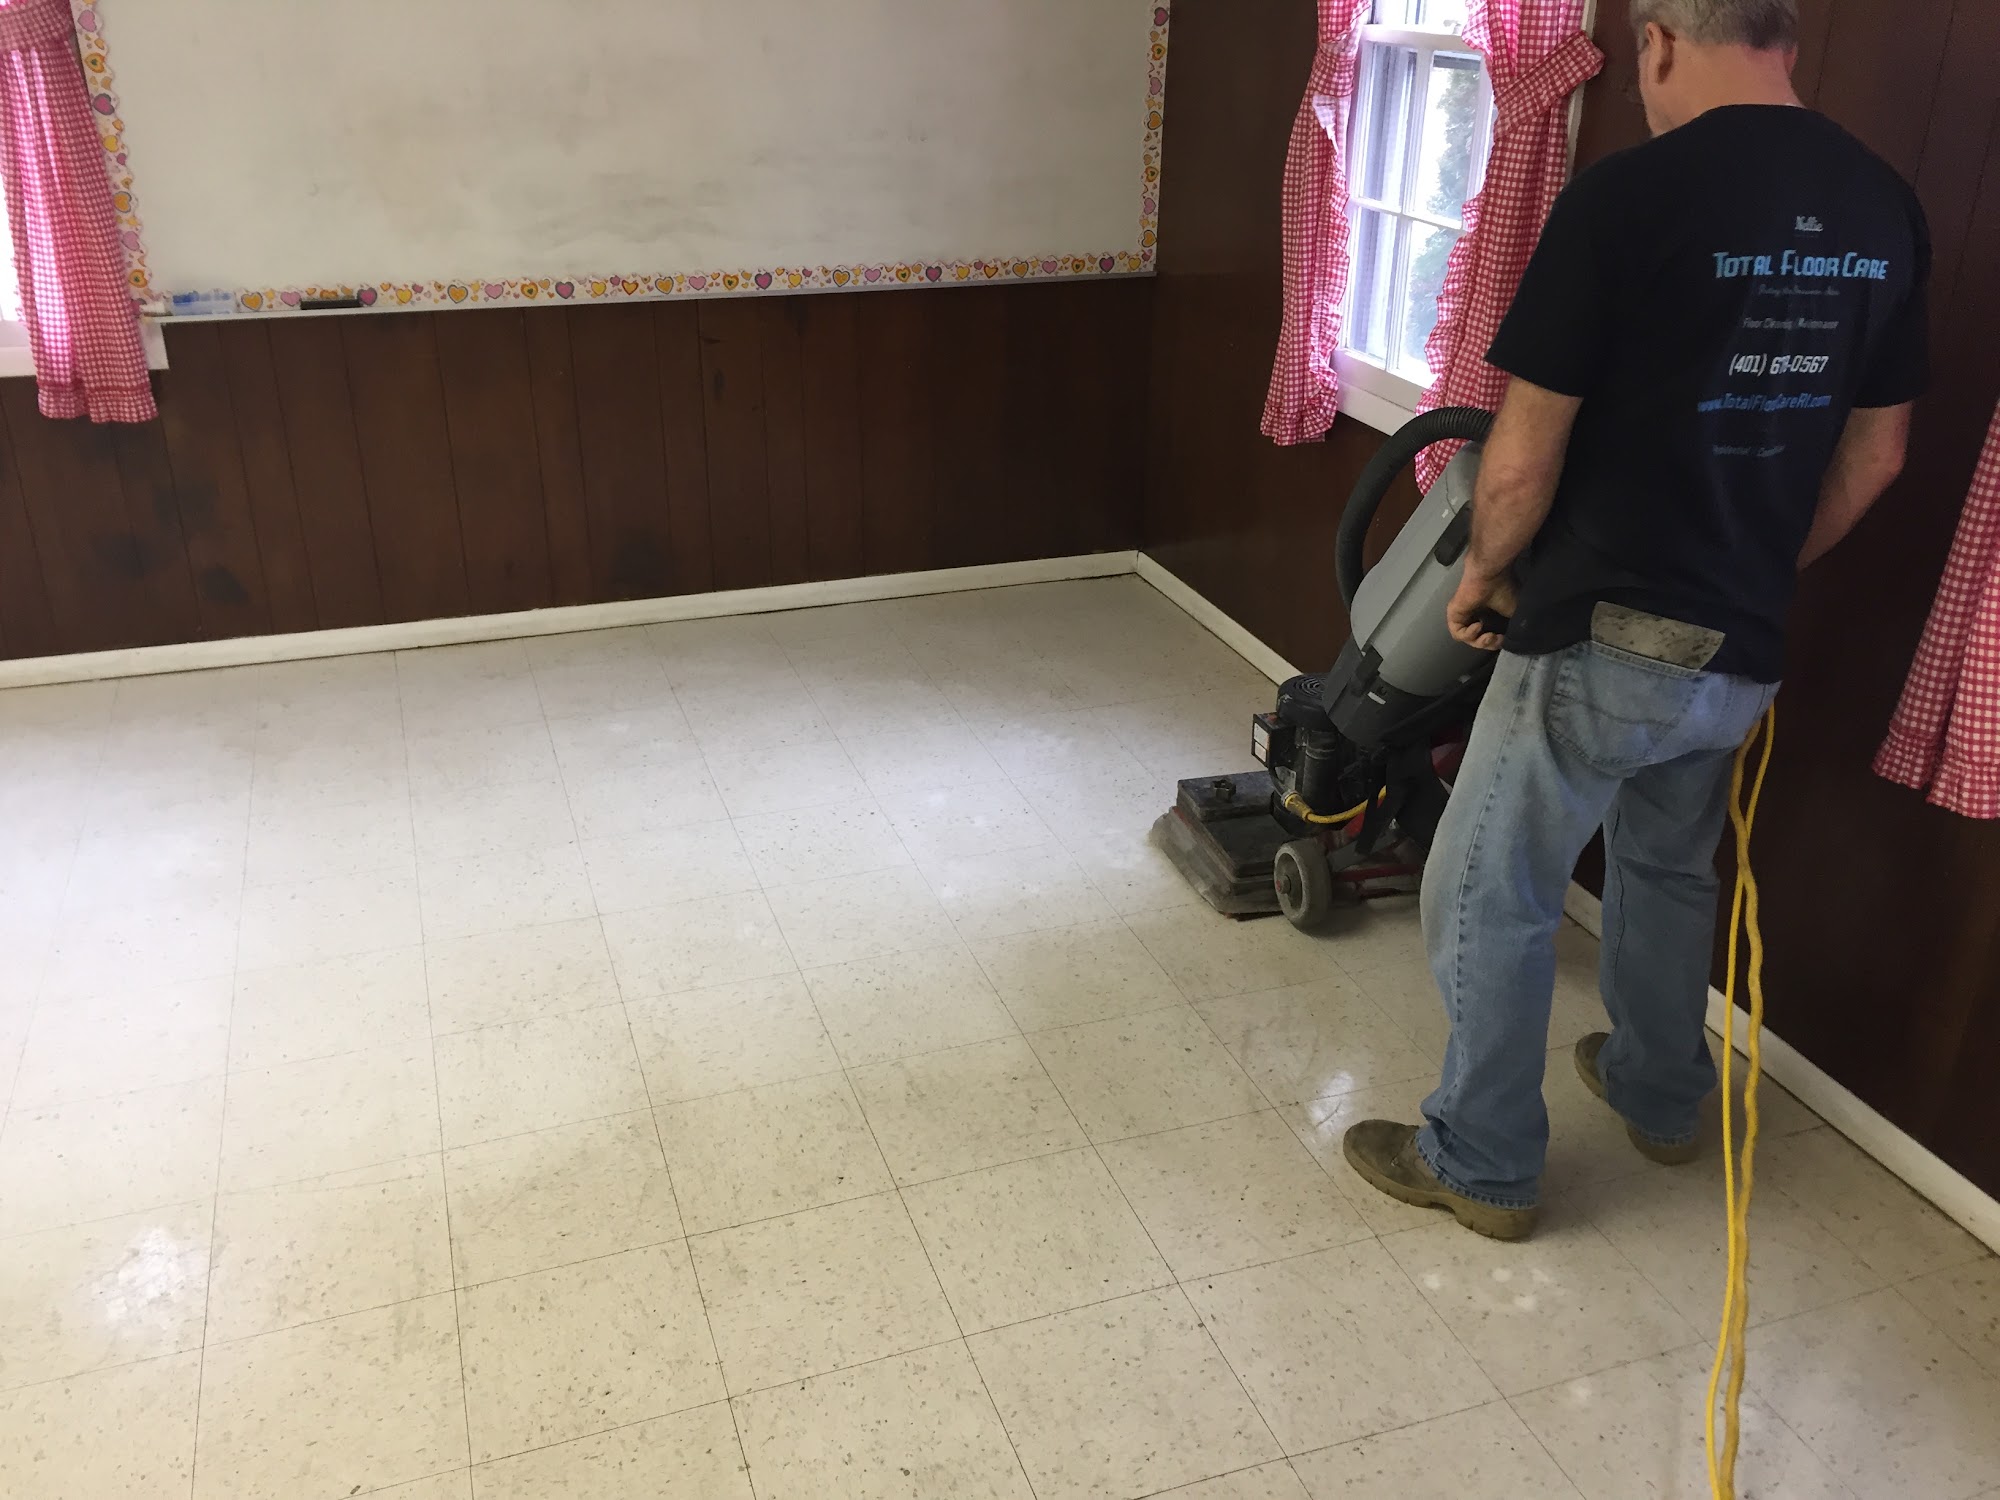 Total Floor Care 1151 Putnam Pike, Chepachet Rhode Island 02814